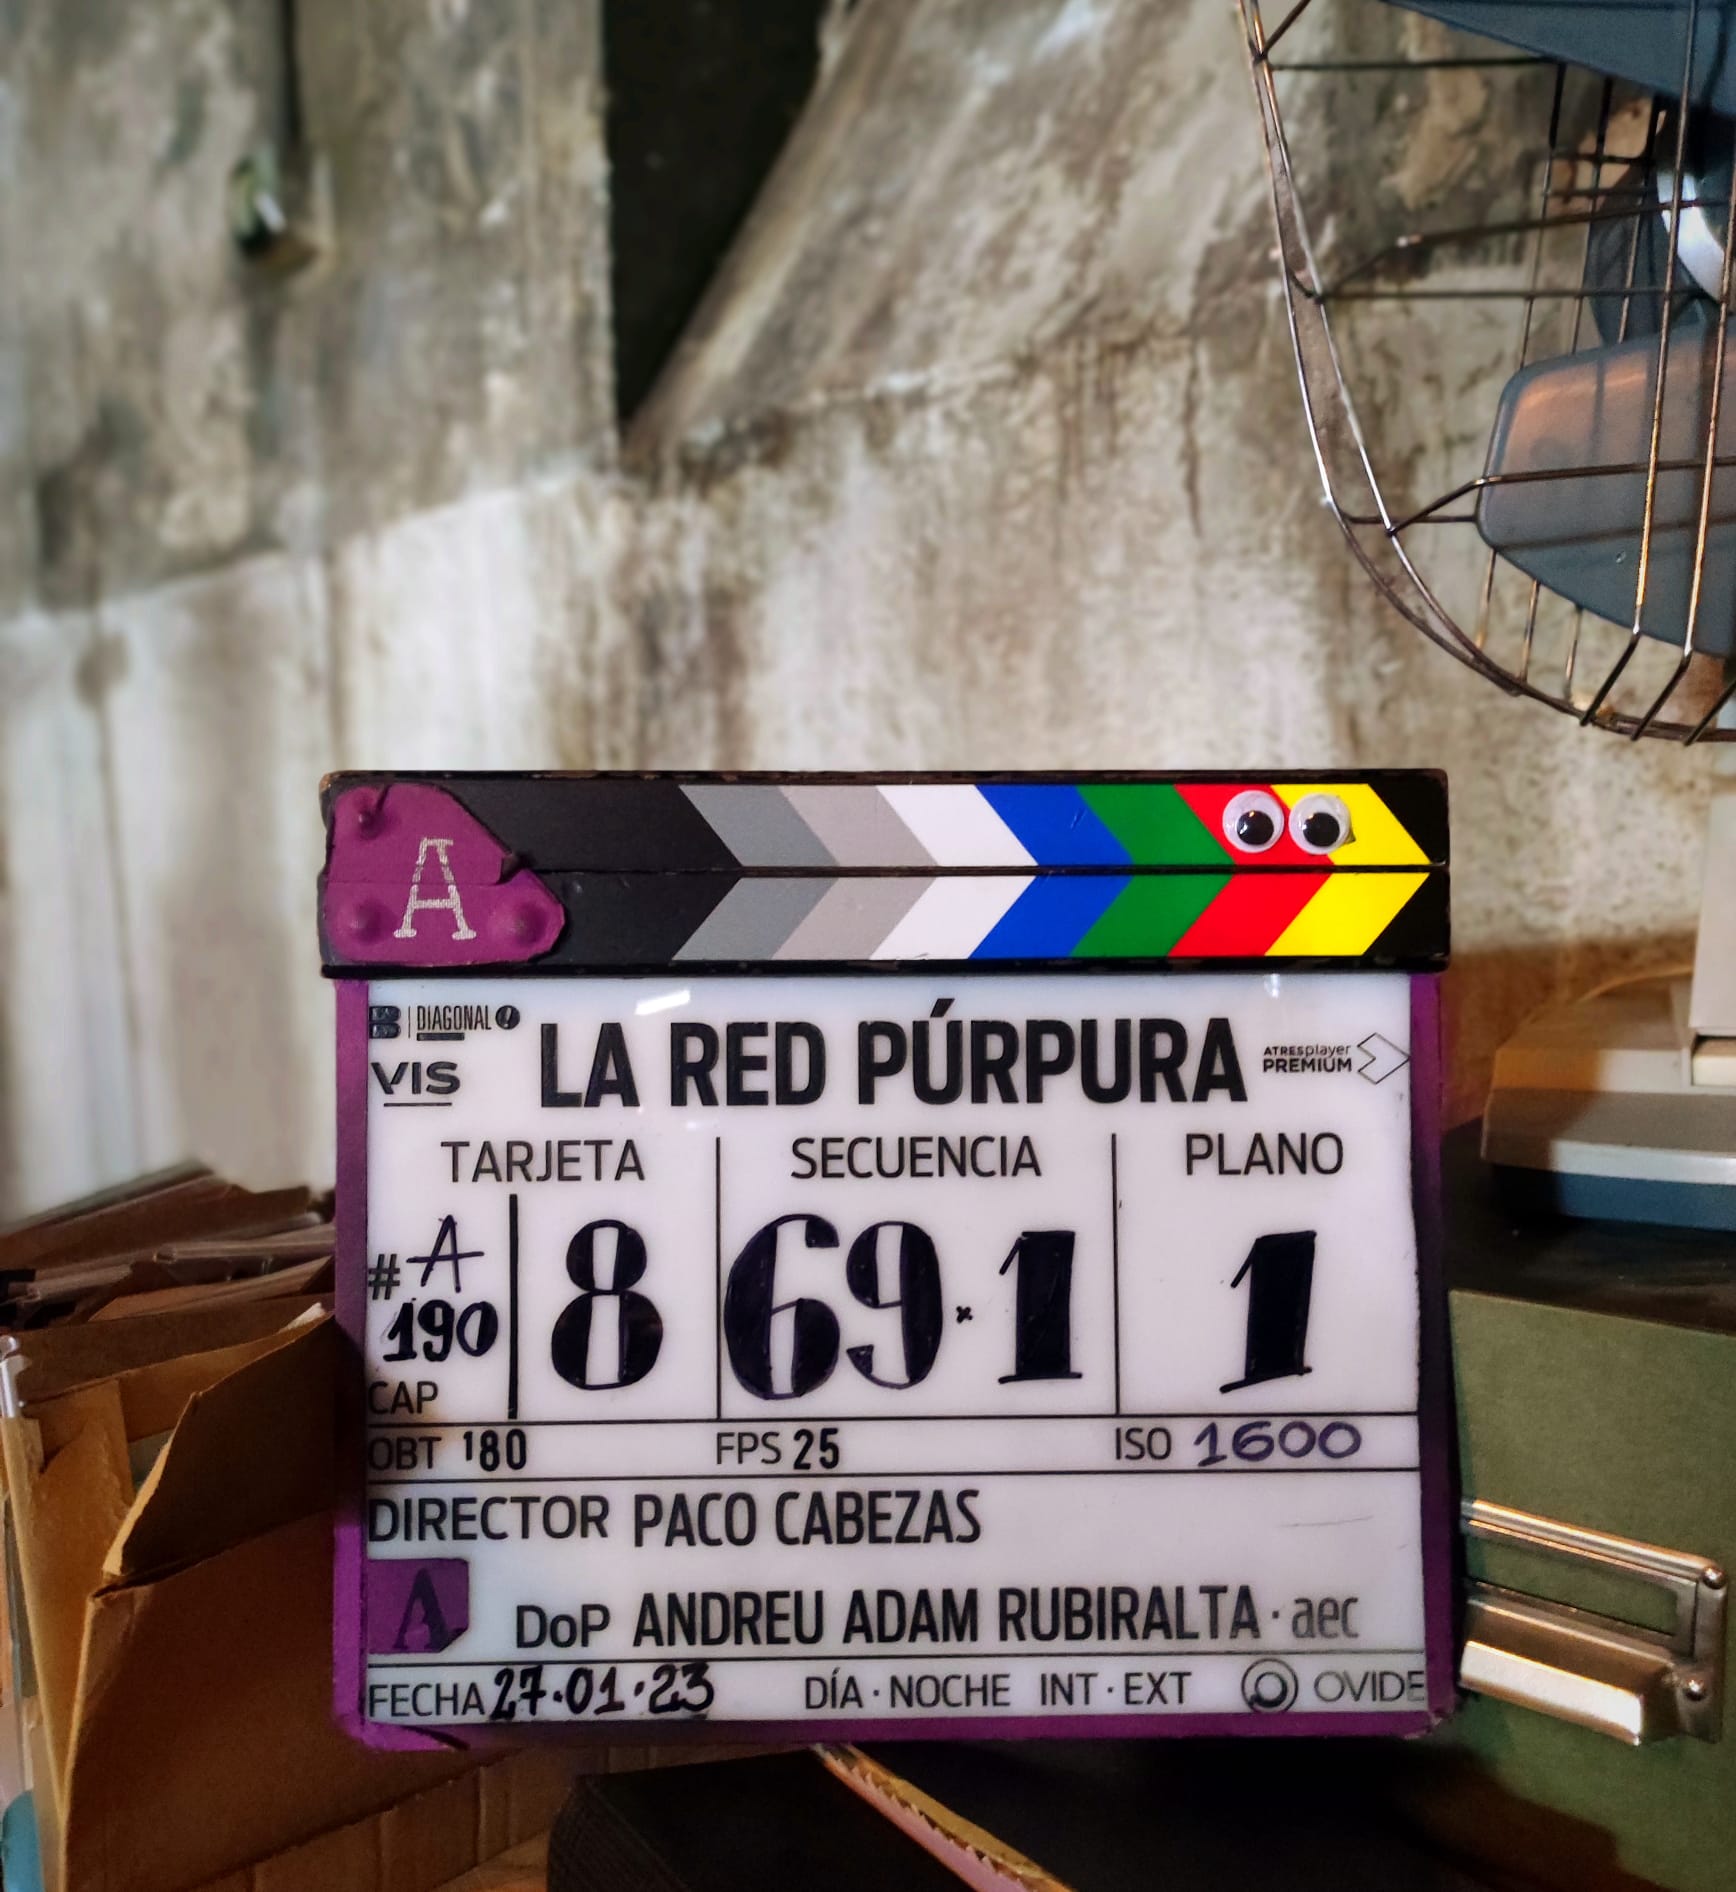 Andreu Adam Rubiralta AEC - La Red Púrpura